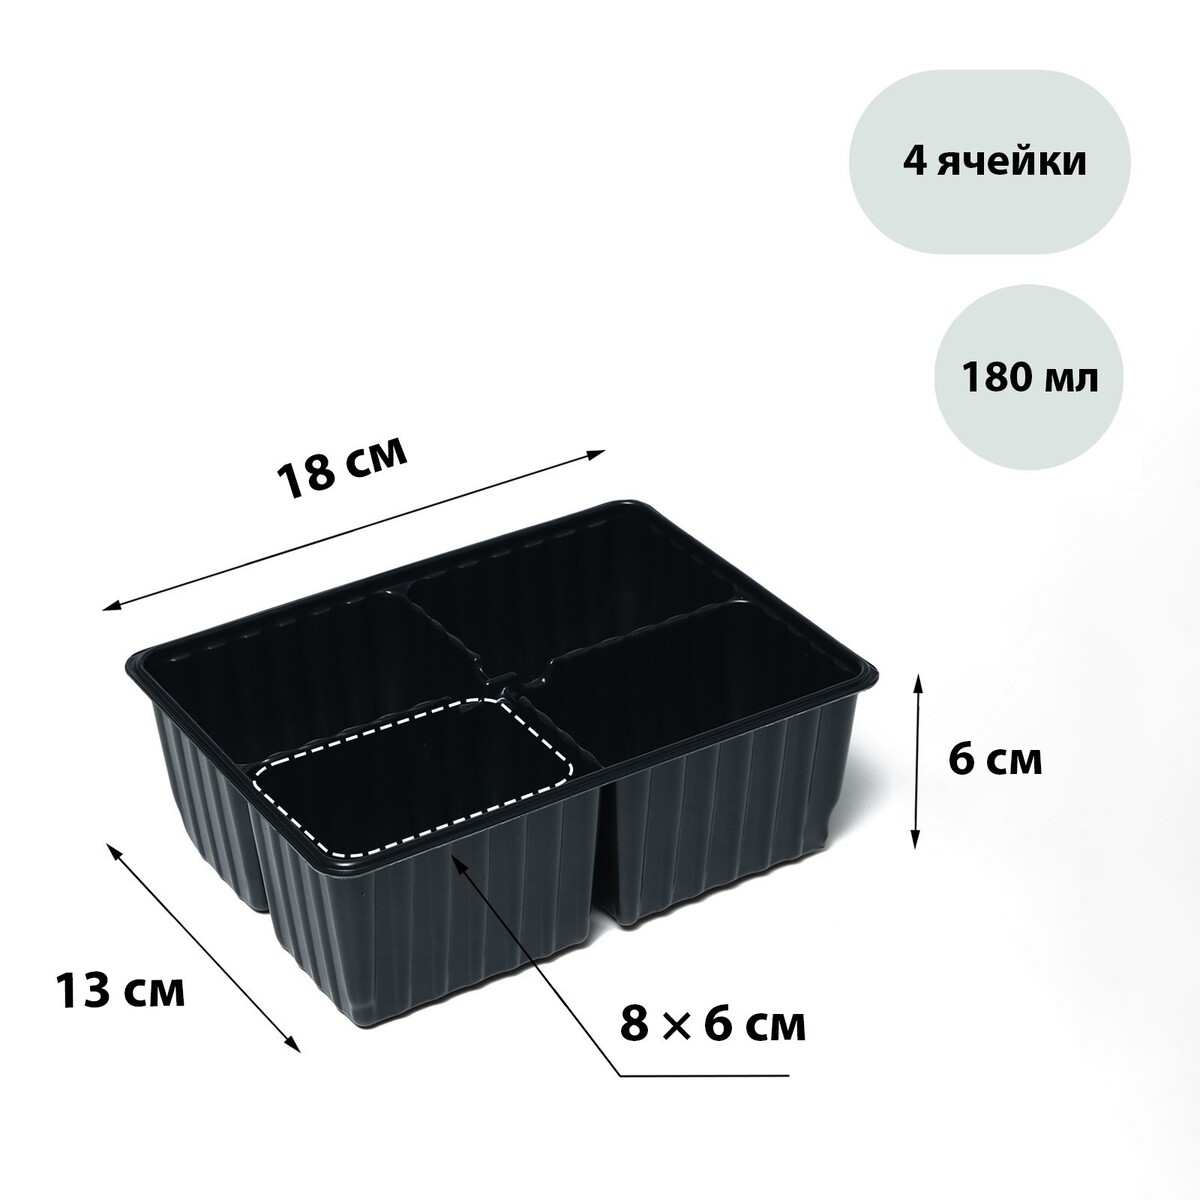 Кассета для рассады, на 4 ячейки, по 180 мл, пластиковая, черная, 18 × 13 × 6 см, в наборе 10 кассет, greengo кассета 11ск thinkrider 11 28t trcass11